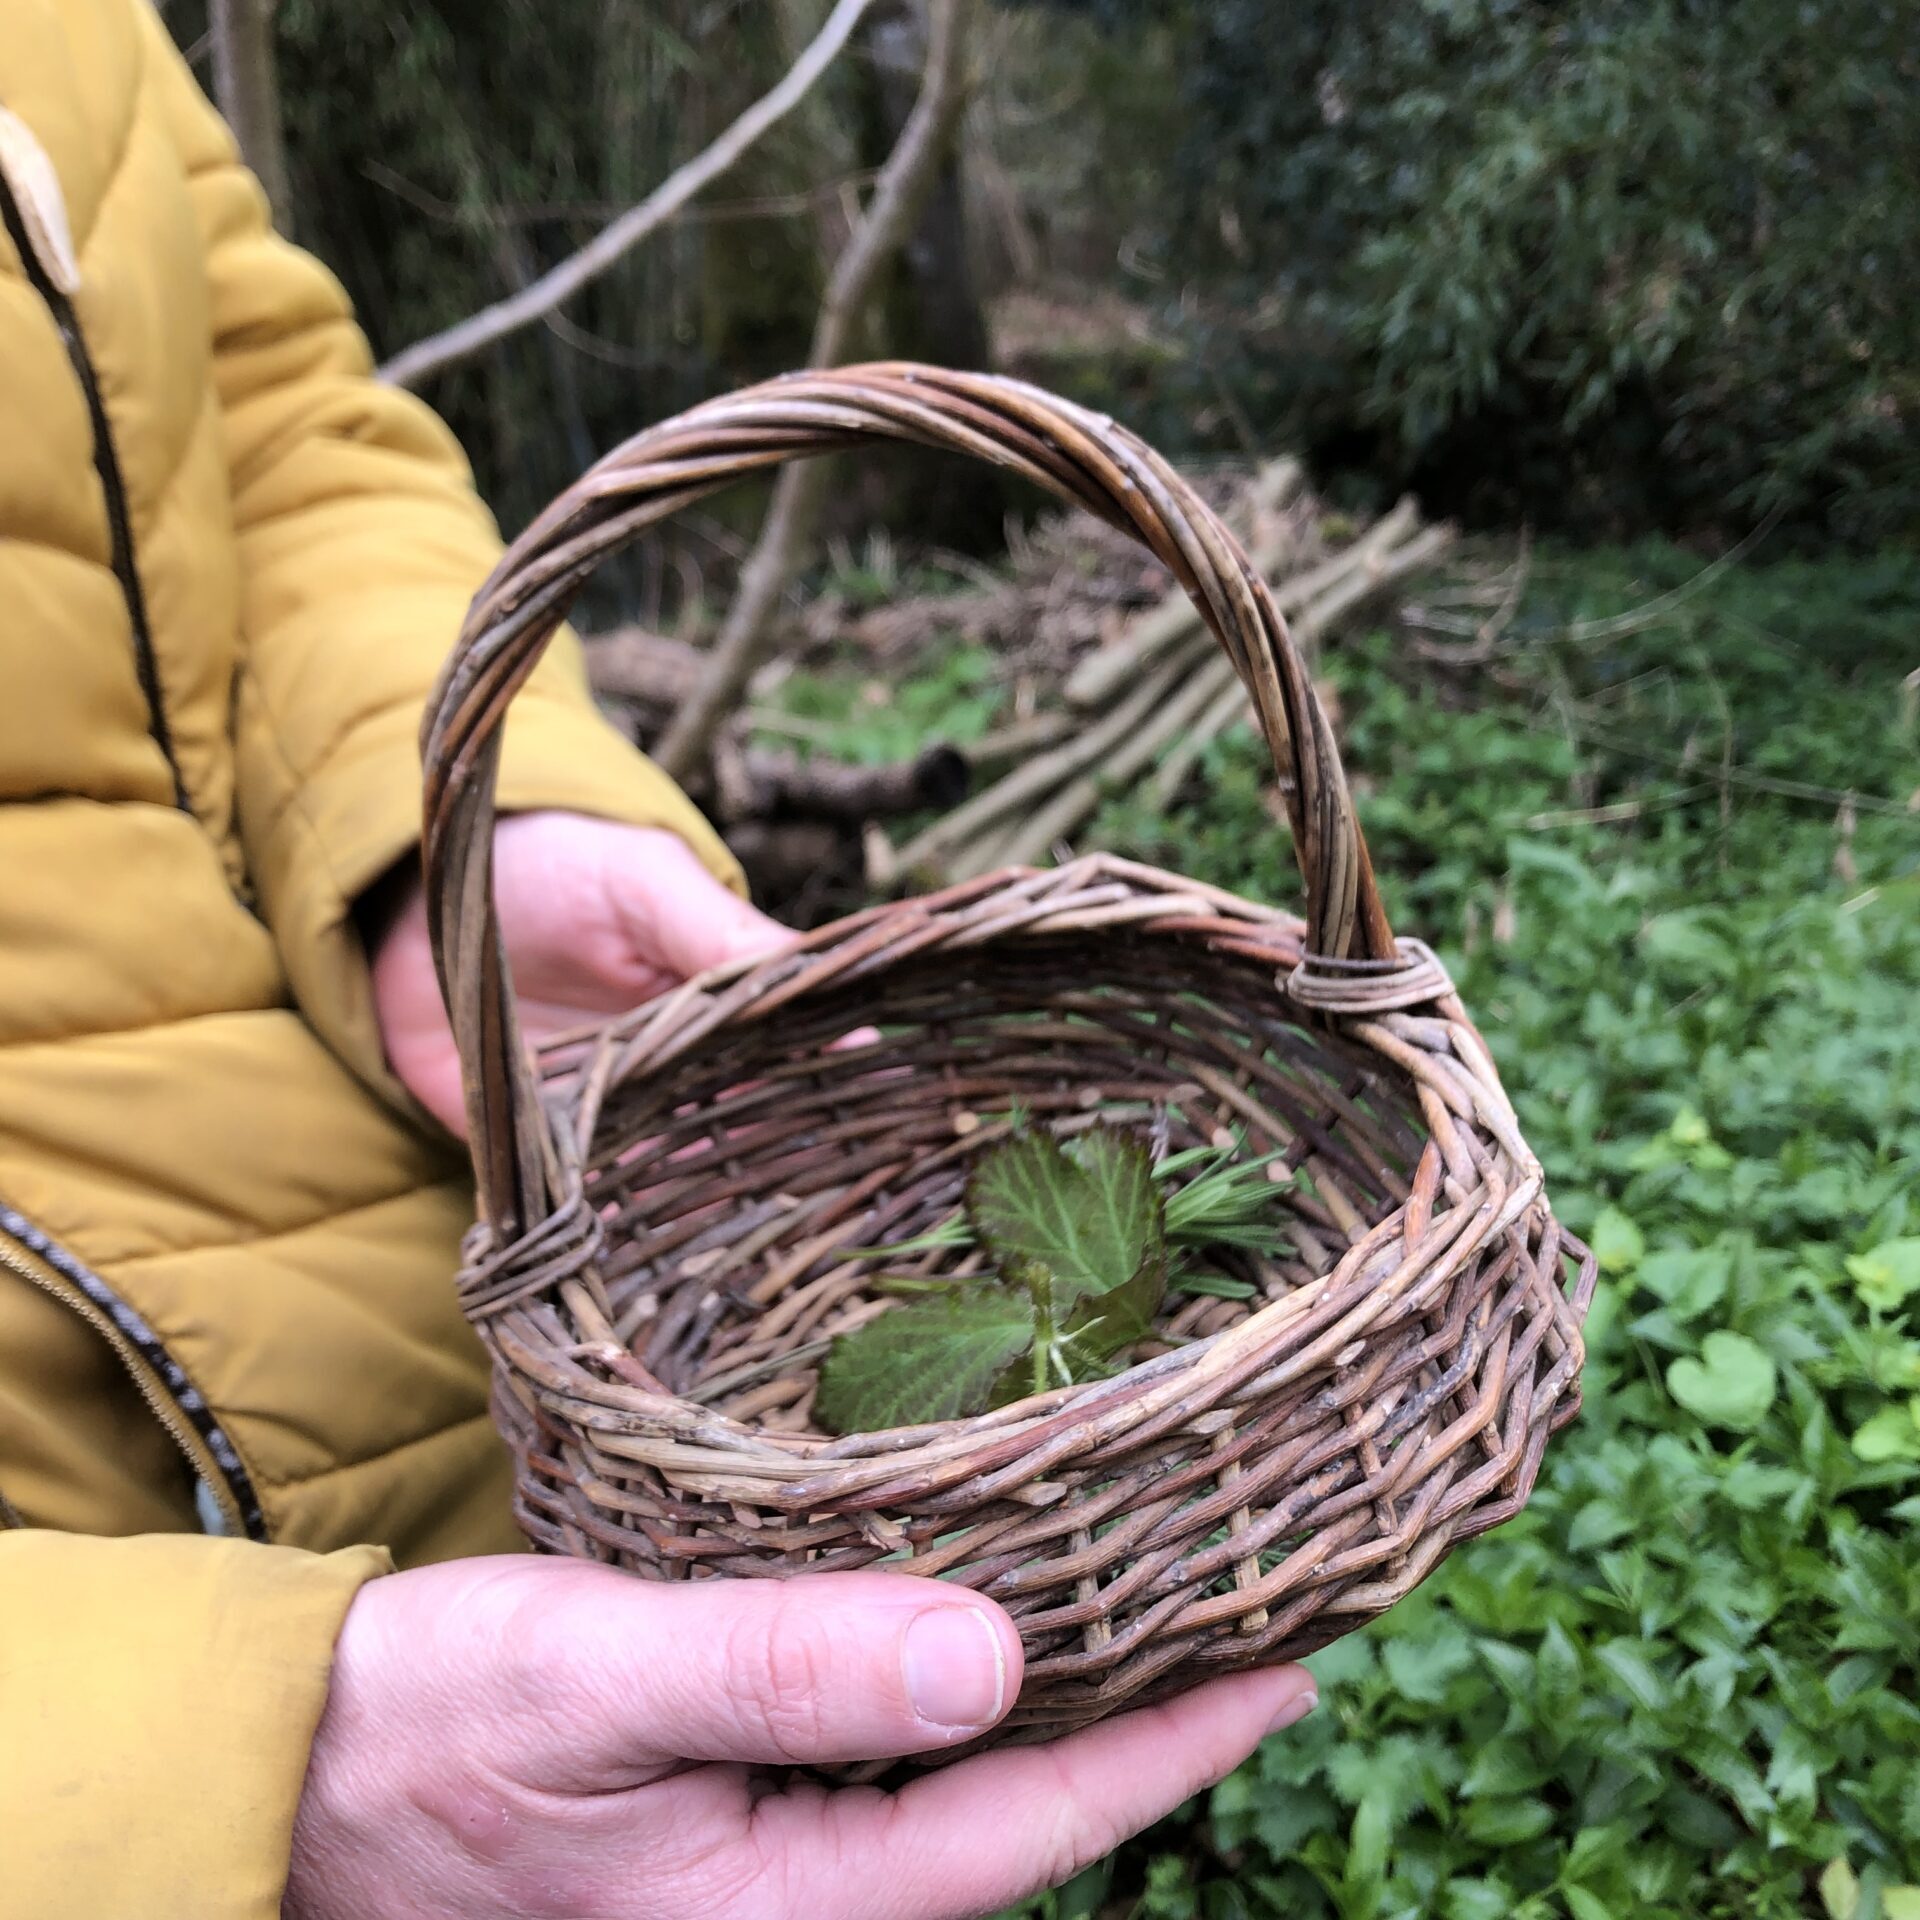 nettles in a woven basket